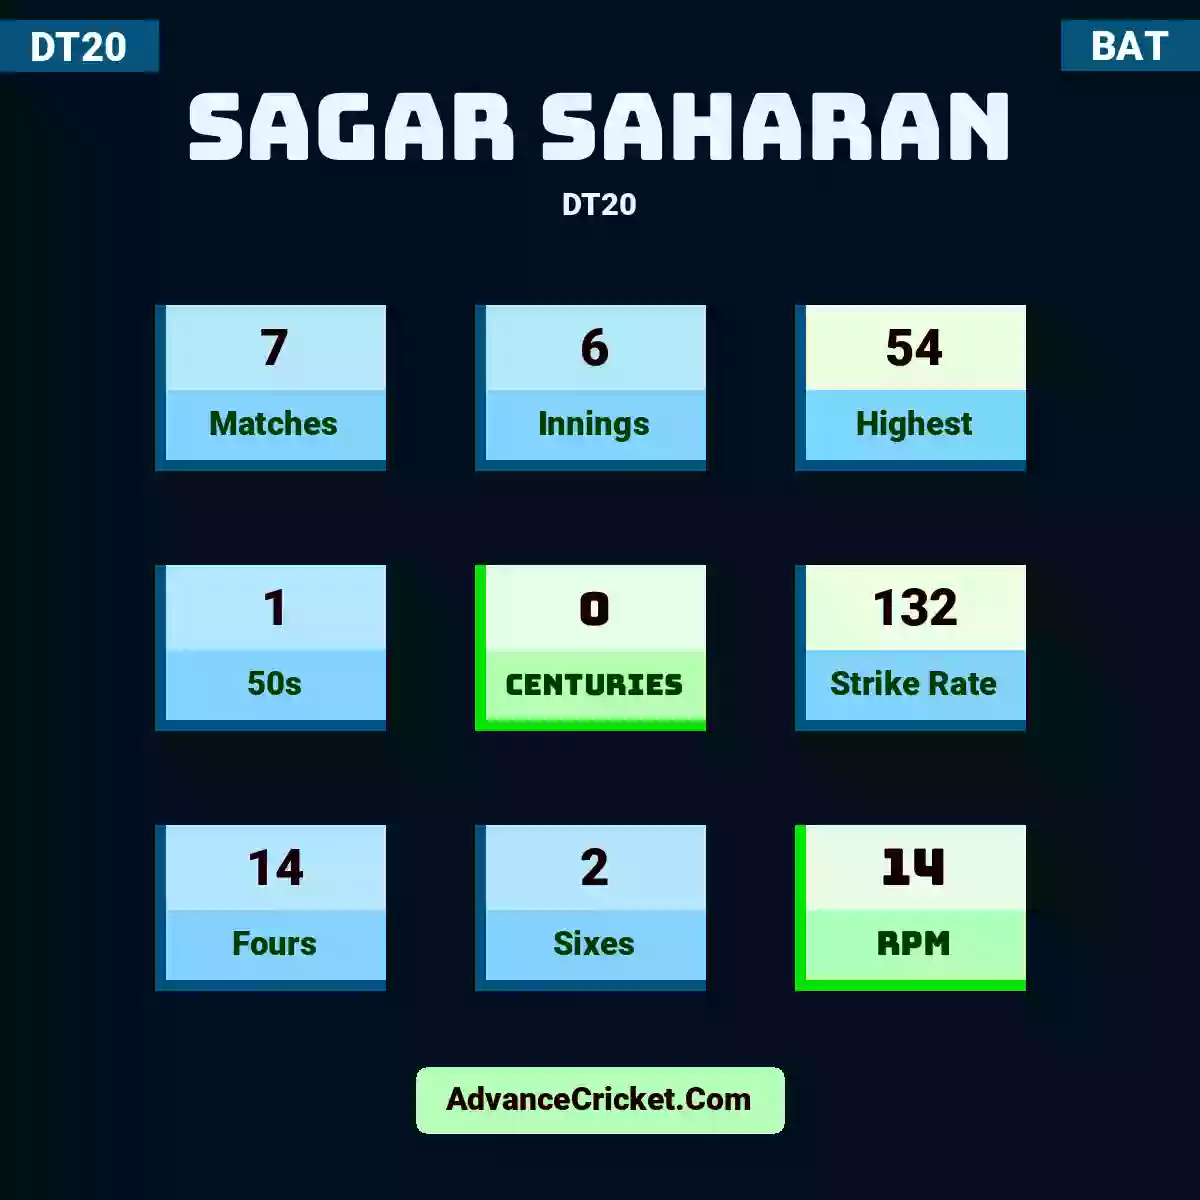 Sagar Saharan DT20 , Sagar Saharan played 7 matches, scored 54 runs as highest, 1 half-centuries, and 0 centuries, with a strike rate of 132. S.Saharan hit 14 fours and 2 sixes, with an RPM of 14.